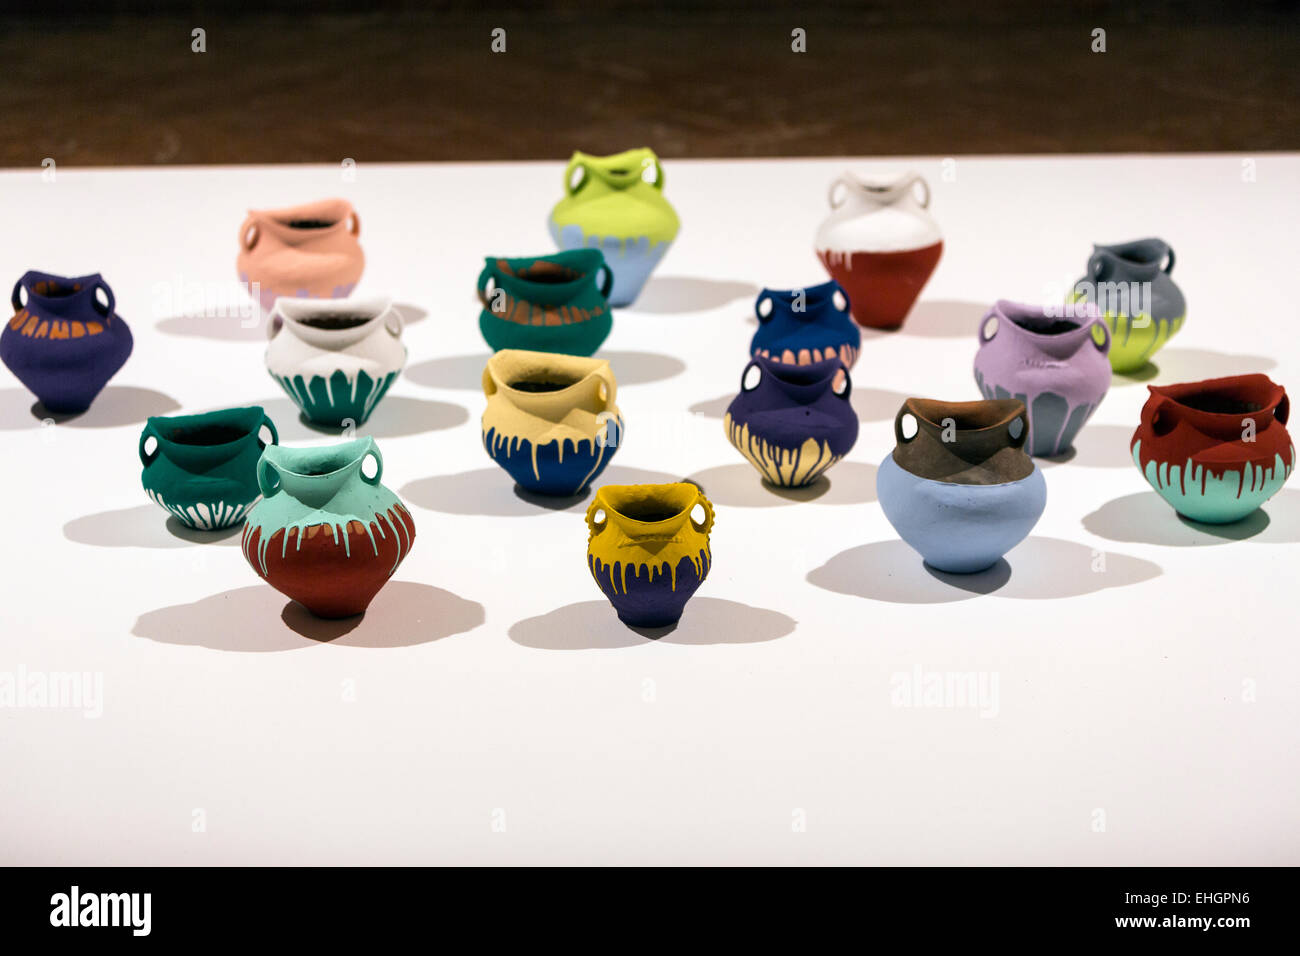 Ai Weiwei “Colored vases”,  2008. Andalusian Contemporary Art Center (The Centro Andaluz de Arte Contemporáneo (CAAC)) Stock Photo